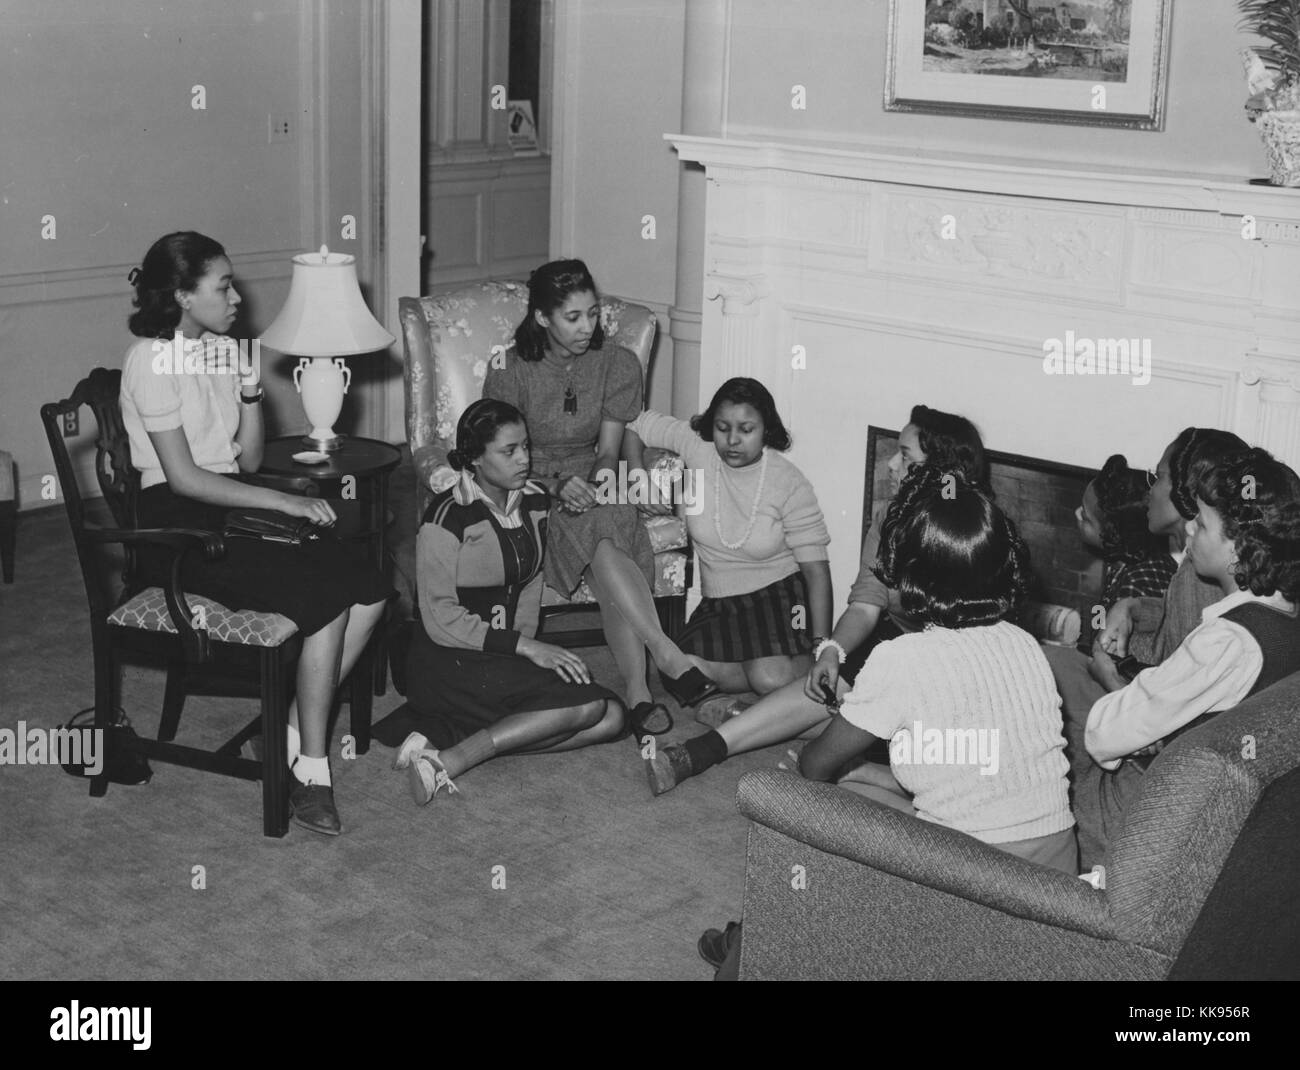 Ein Foto der jungen Frauen treffen mit einem Ausbilder vom National Youth Administration, sind sie zusammen in einem Wohnzimmer versammelt, einige der jungen Frauen auf dem Boden sitzen, da es nicht genügend Sitzplätze für alle, die NYA war eine Organisation als Teil von Franklin Roosevelts New Deal, das Ziel der Agentur gebildet wurde, um Ausbildungs- und Arbeitsplätze für Amerikaner zwischen 16 und 25 Jahren, von 1935 bis 1939 betrieben, dieses Treffen in der Gute Hirte Community Center in Chicago, Illinois, 1877 stattfand. Von der New York Public Library. Stockfoto